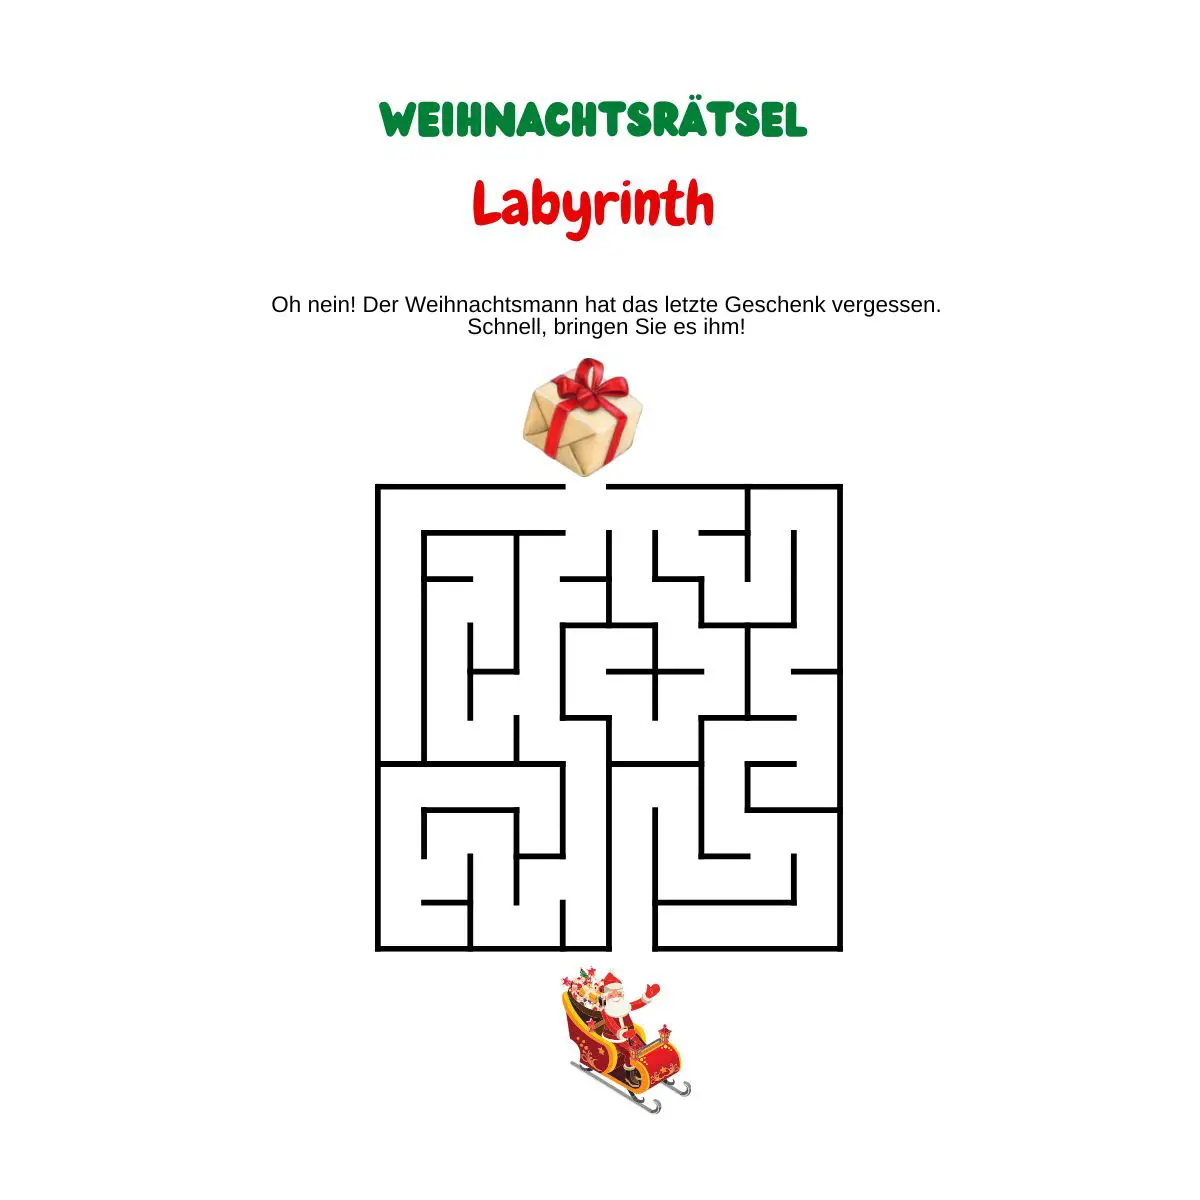 Labyrinth mit Geschenk und Weihnachtsschlitten.